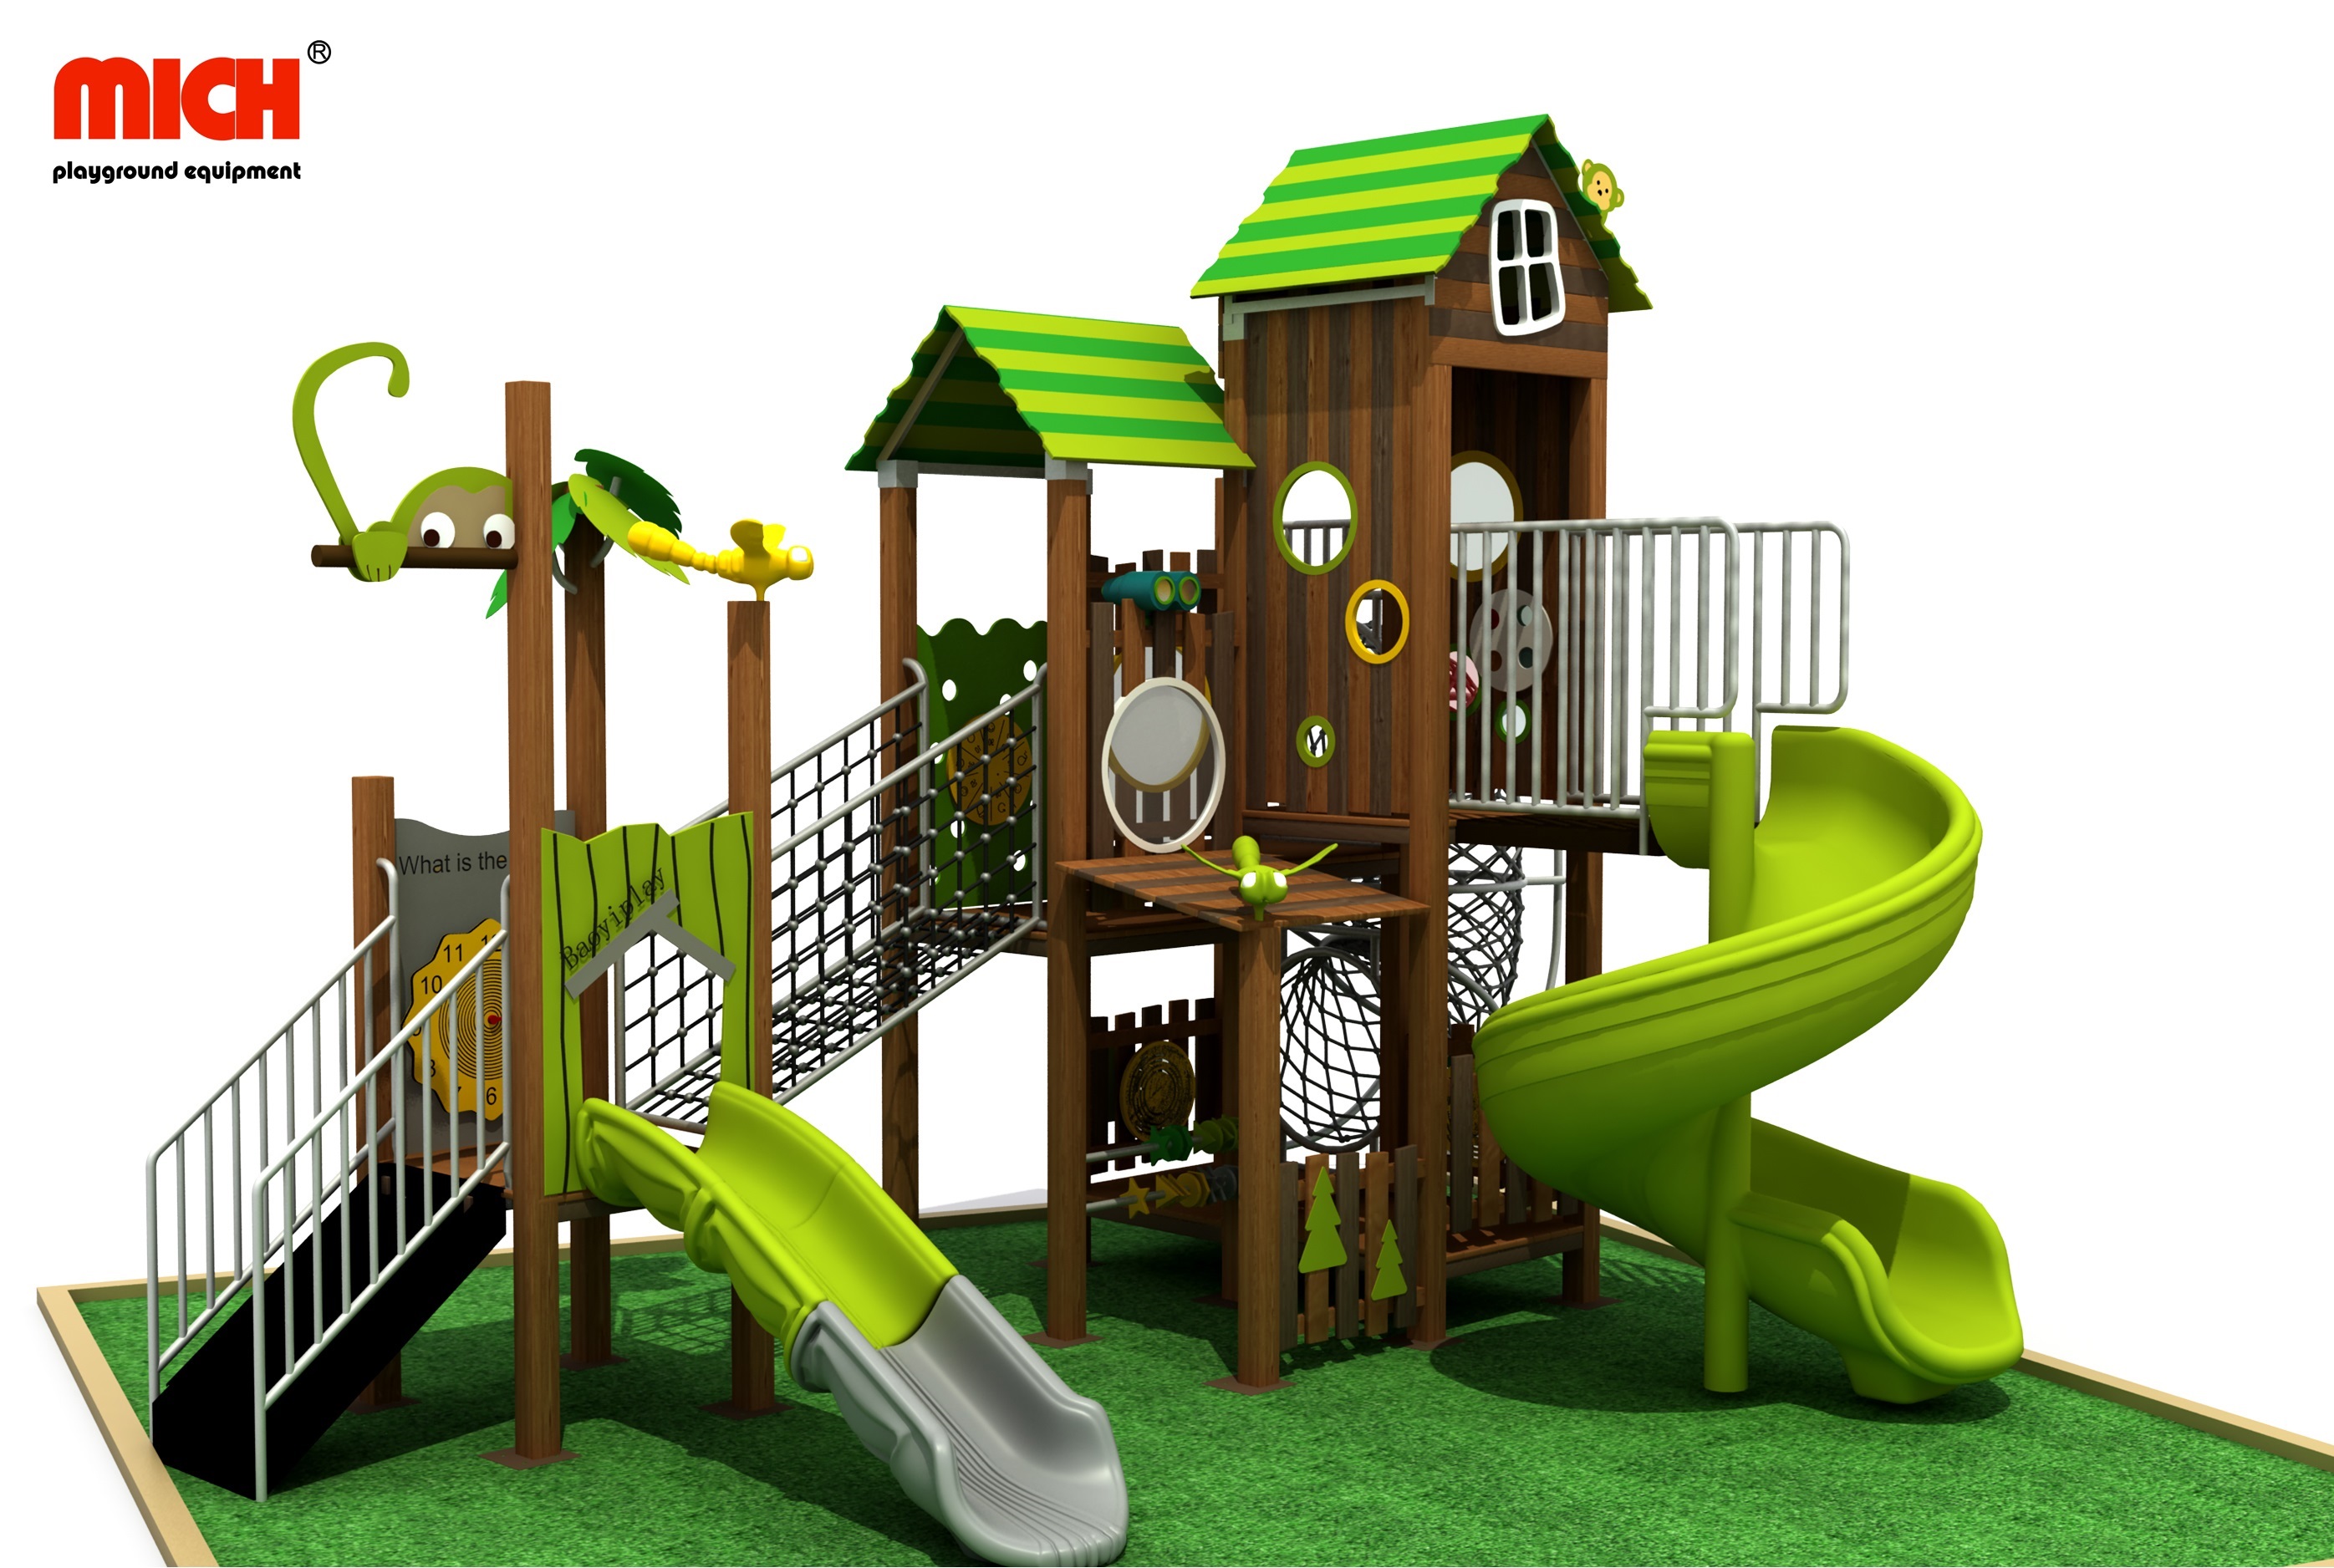 ¿Qué tiene de bueno los parques infantiles personalizados no estándar?